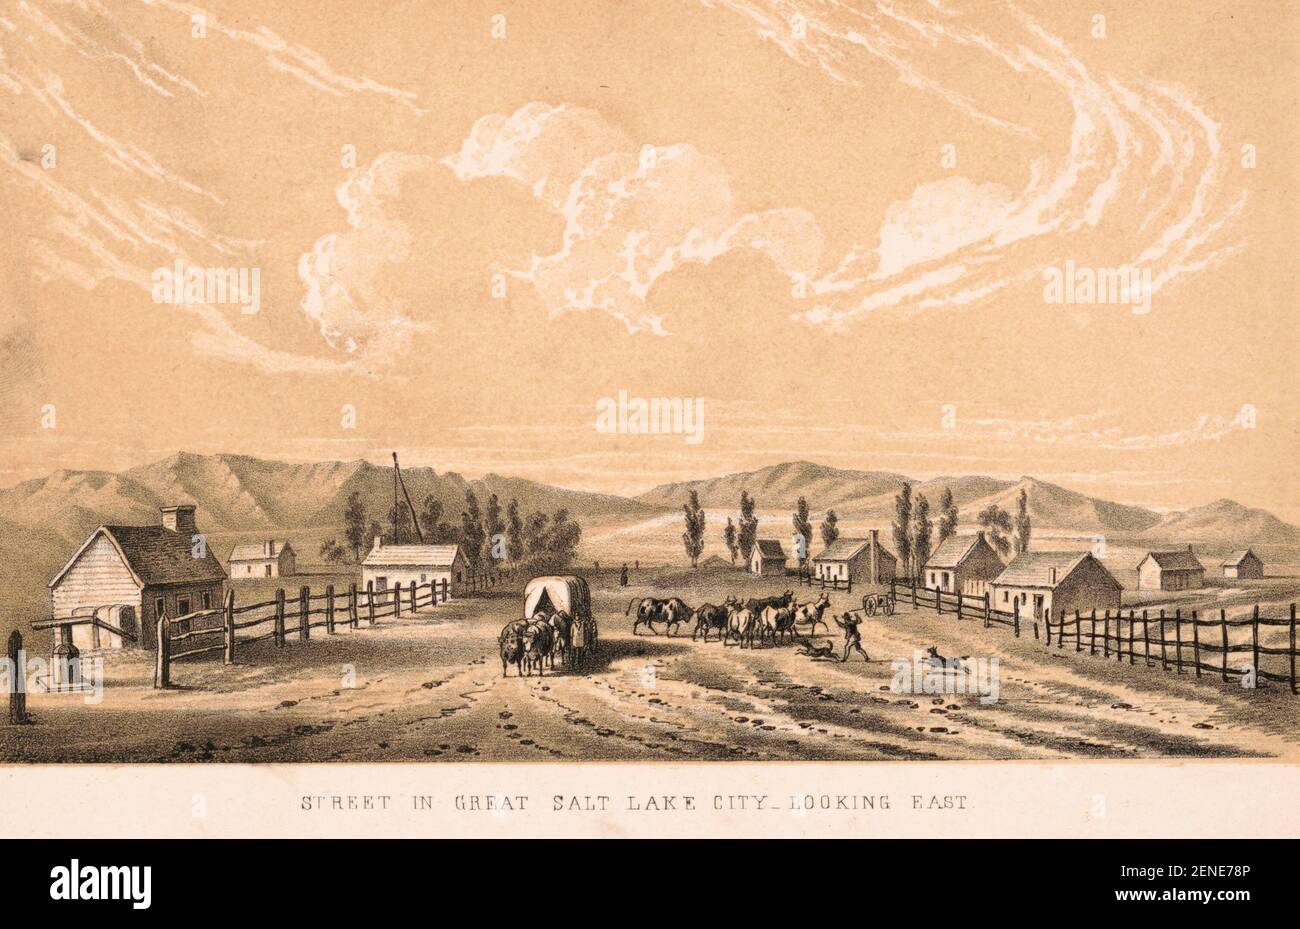 Straße in Great Salt Lake City - Blick nach Osten - Drucken zeigt einen breiten Feldweg, beidseitig eingezäunt, mit ein paar kleinen Gebäuden hinter den Zäunen; Zeigt auch einen Planwagen, der sich dem Betrachter nähert, und einen Mann mit zwei Hunden, die in der Nähe der Straßenmitte Rinder hüten, 1851 Stockfoto